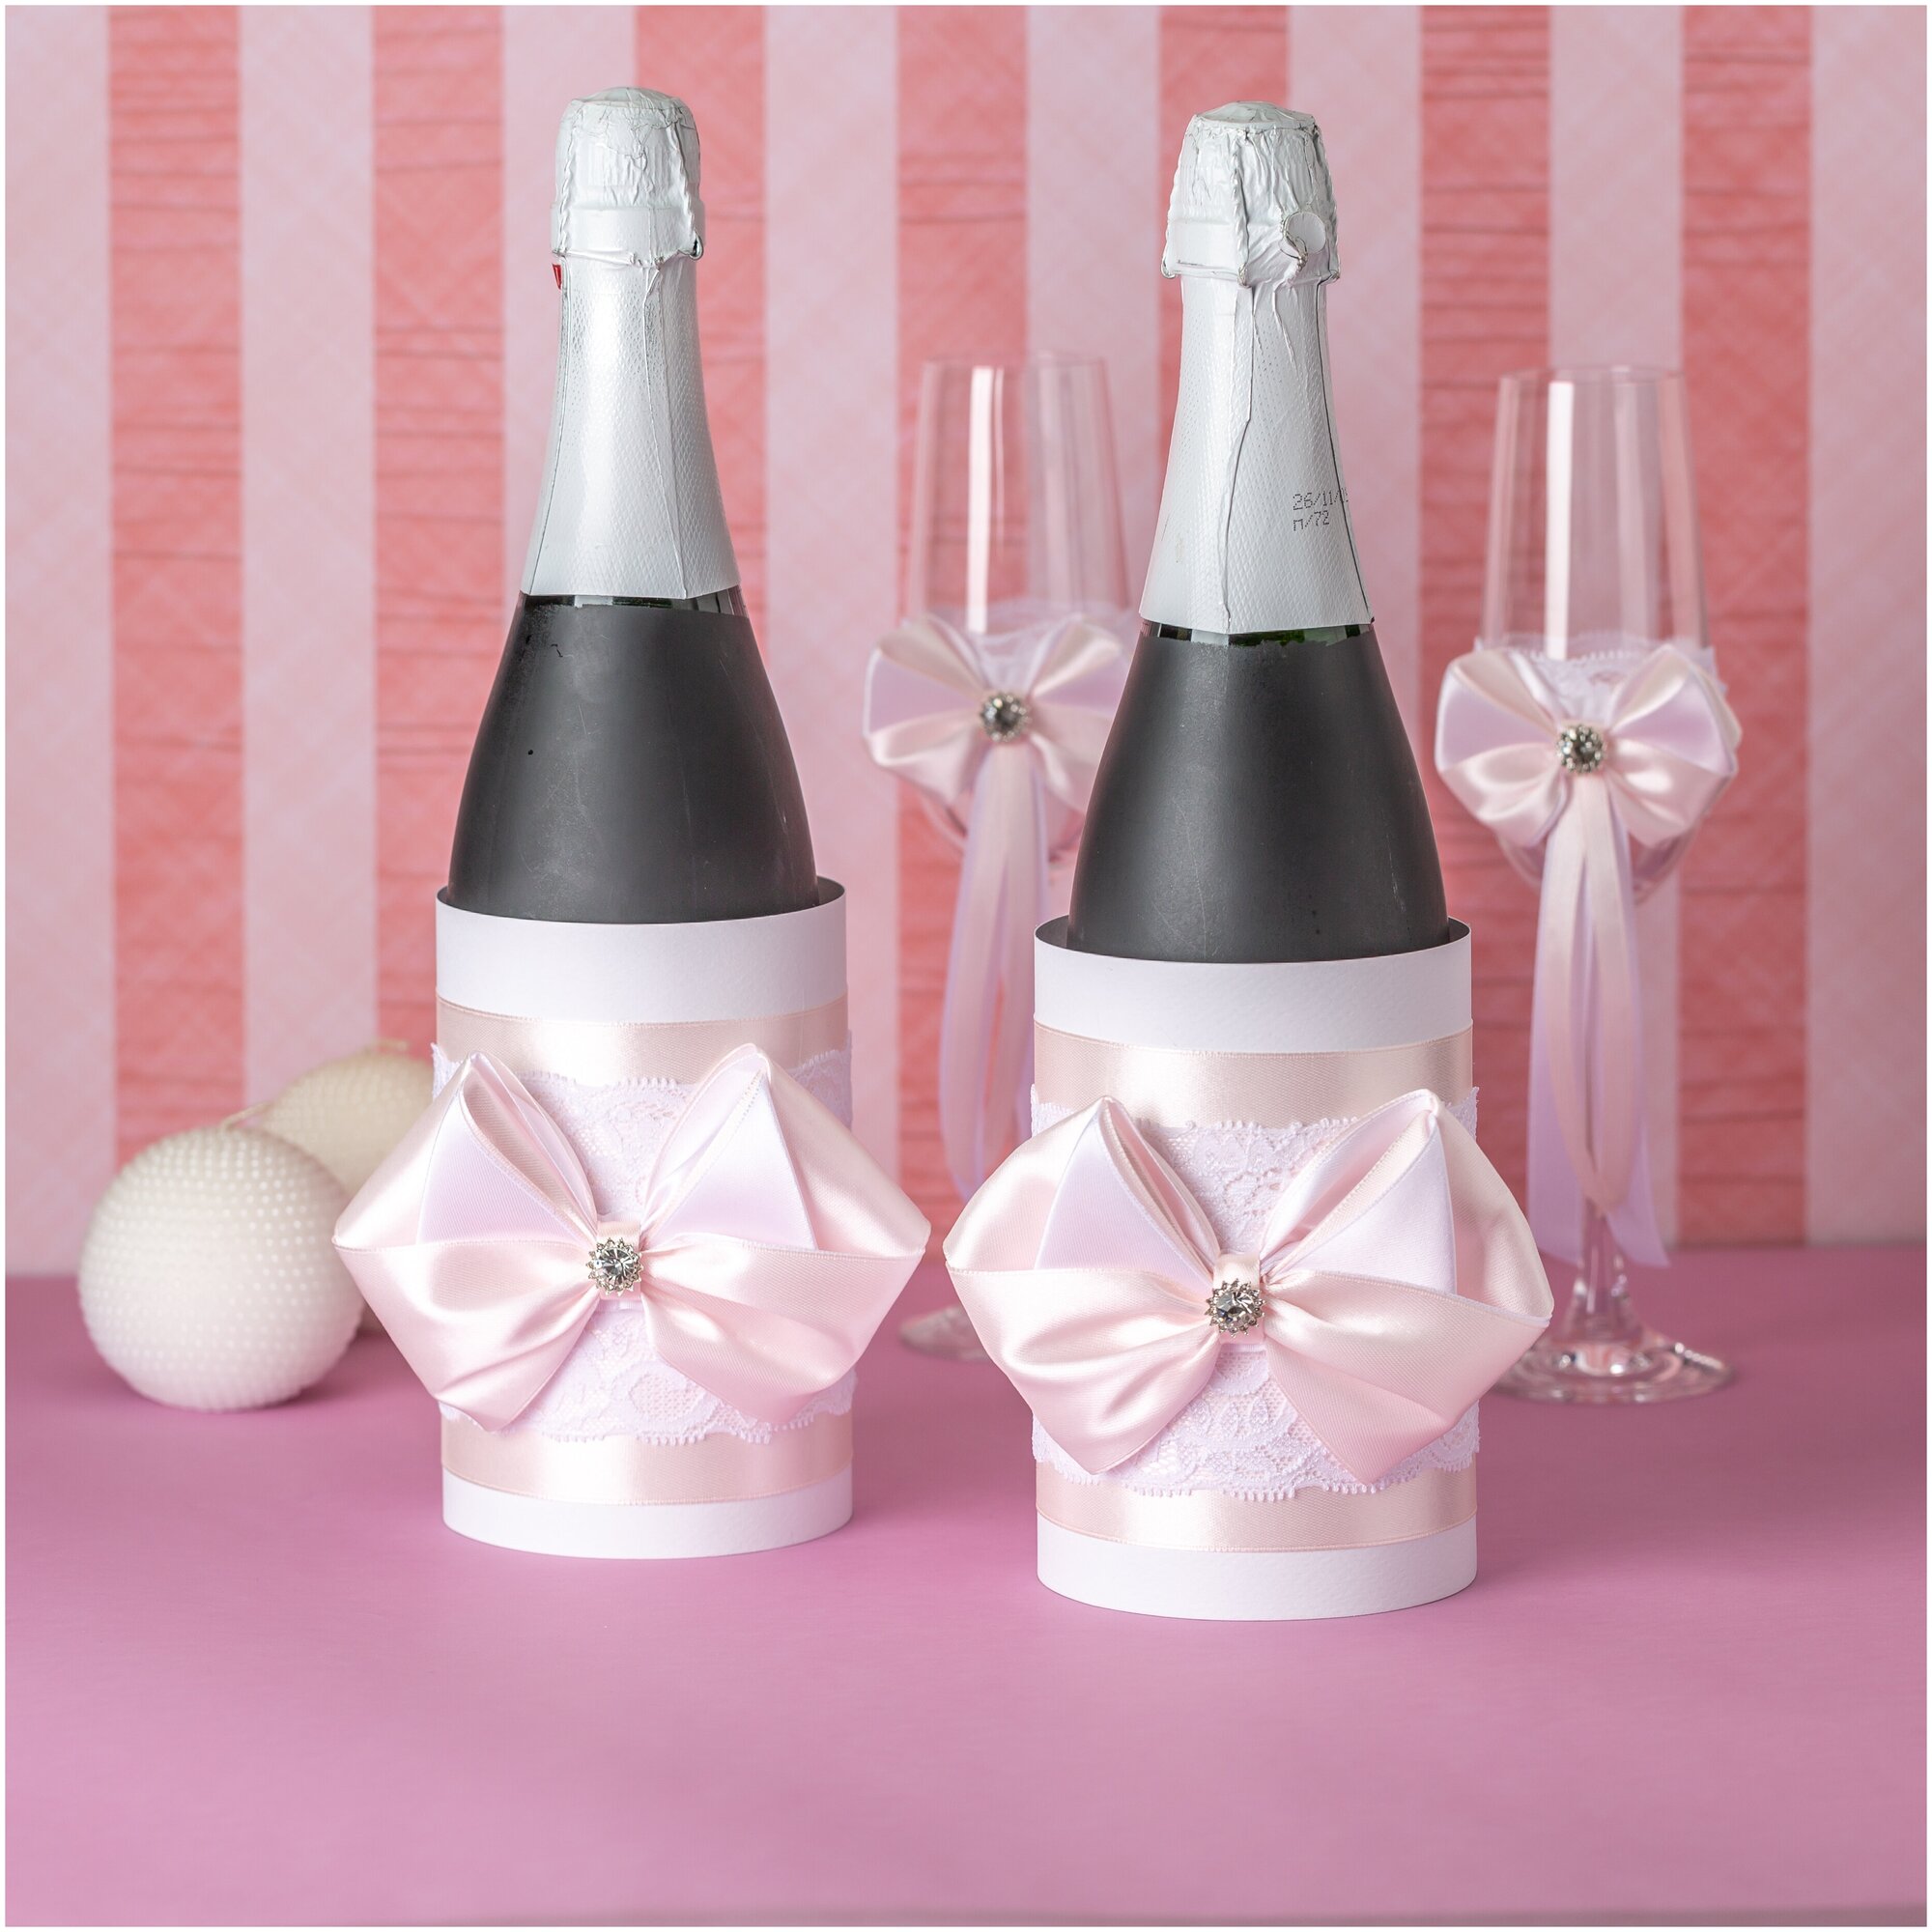 Украшение на свадебное шампанское "Нежность" в виде двух тубусов с атласным декором розового цвета, ручная работа